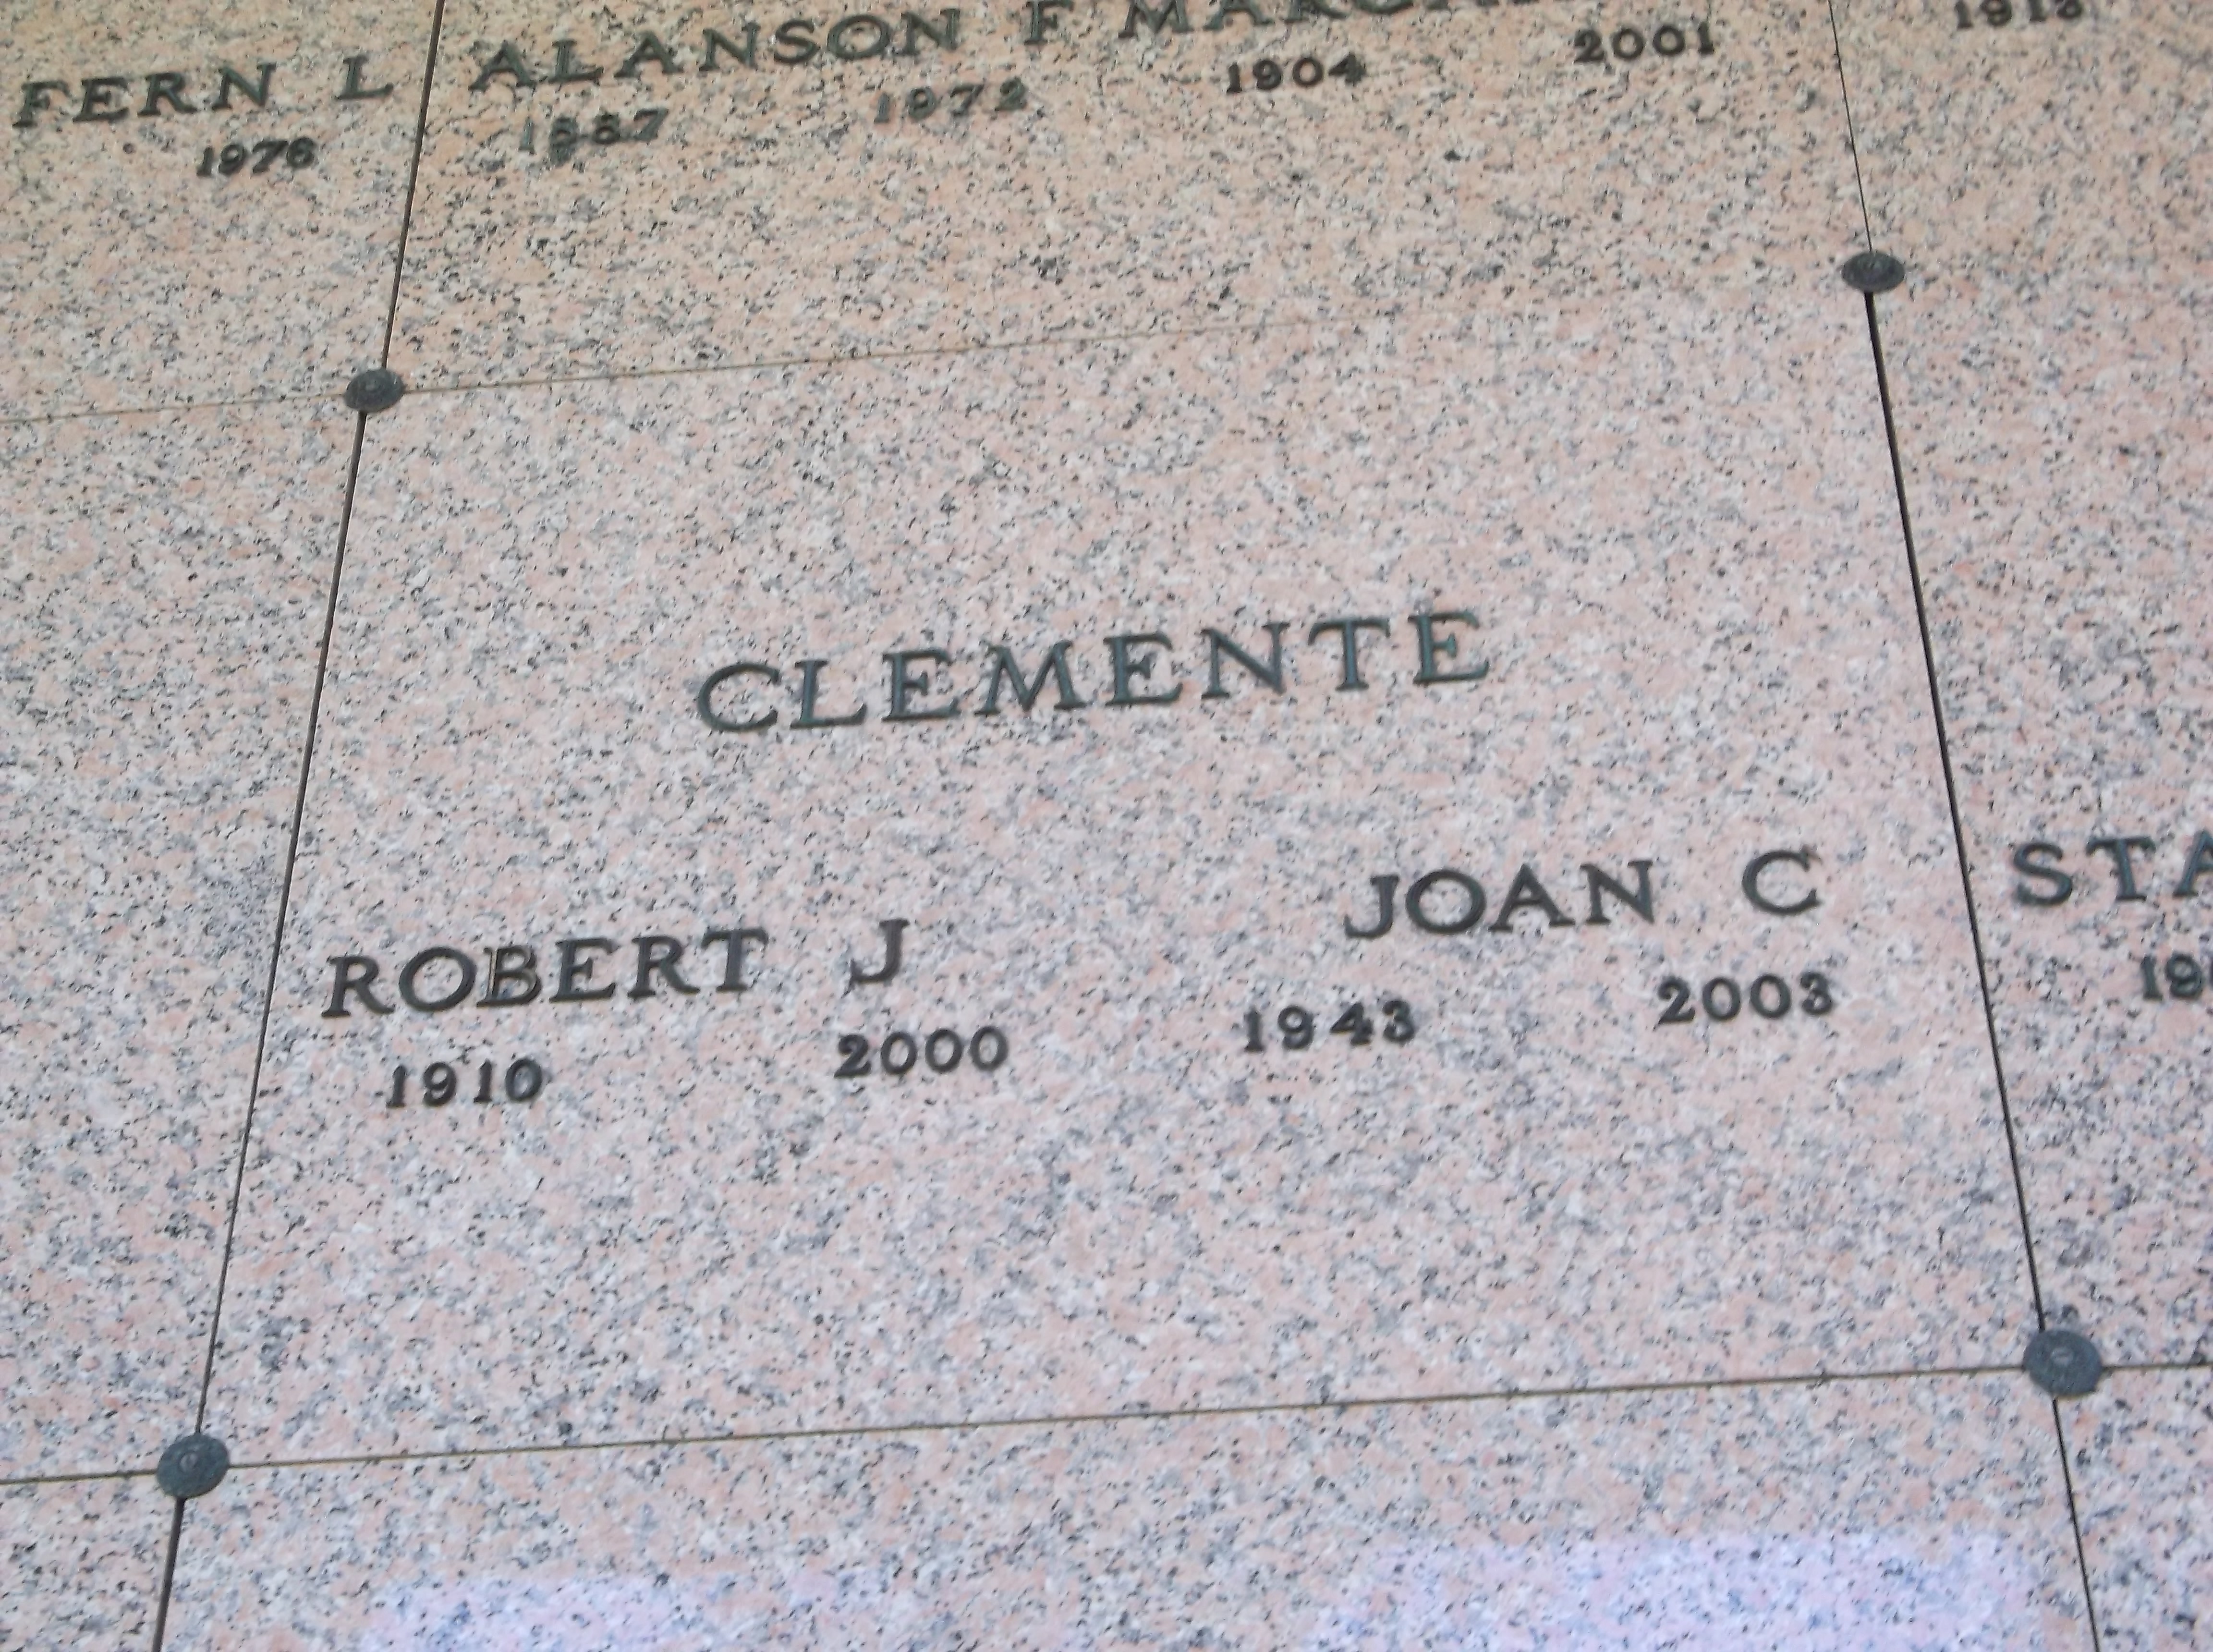 Joan C Clemente